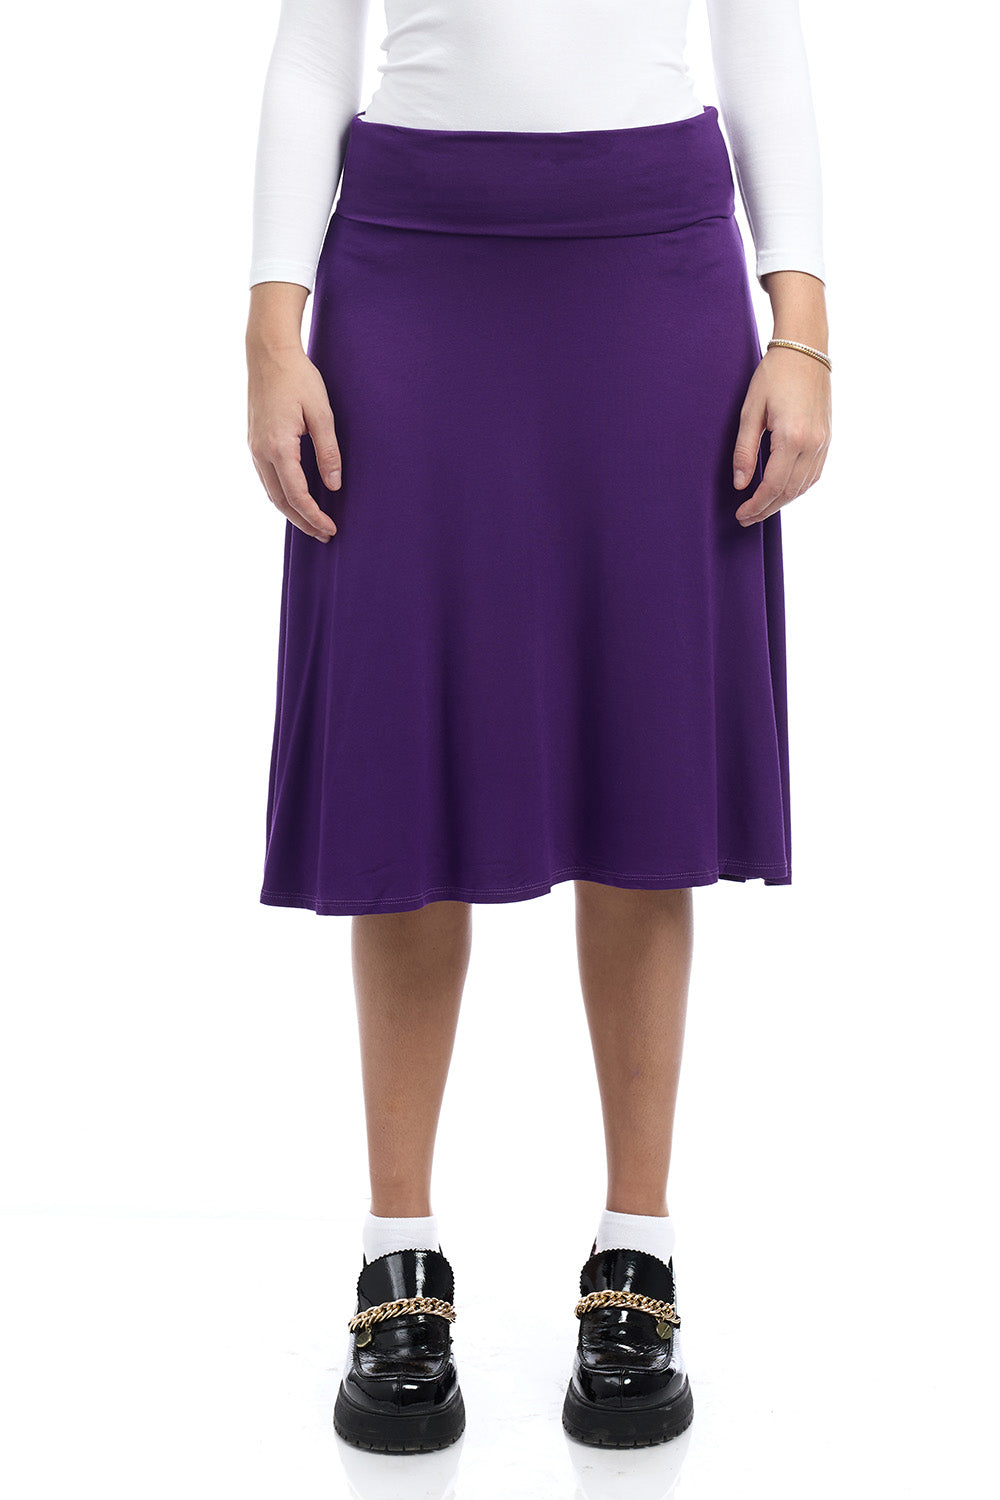 Old Navy inspired foldover flary knee length midi purple skirt